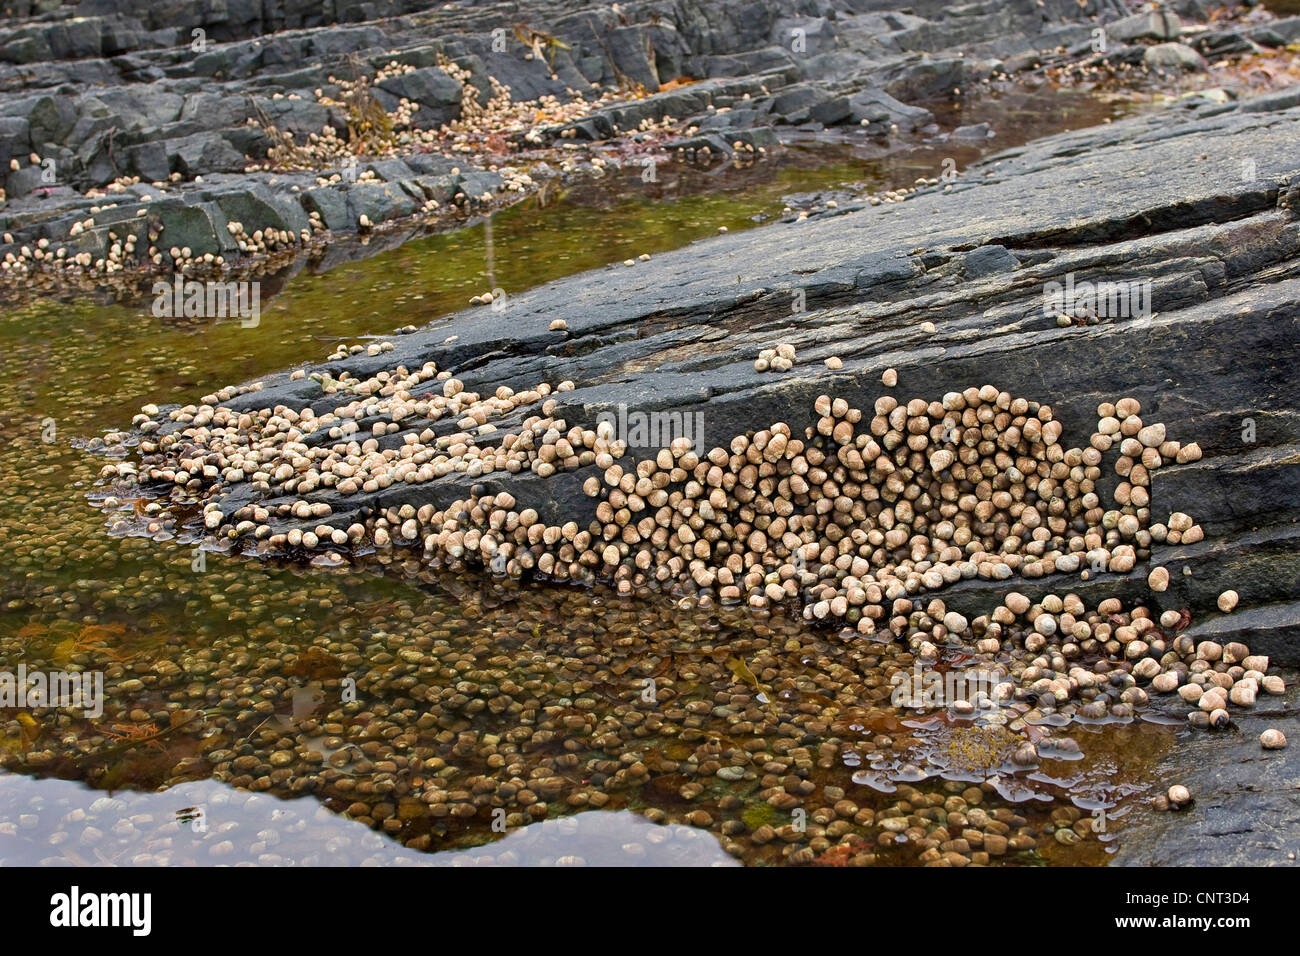 gemeinsamen Immergrün, gemeinsame Winkle, essbare Winkle (Littorina bei), bei Ebbe auf den Felsen der Küste Stockfoto